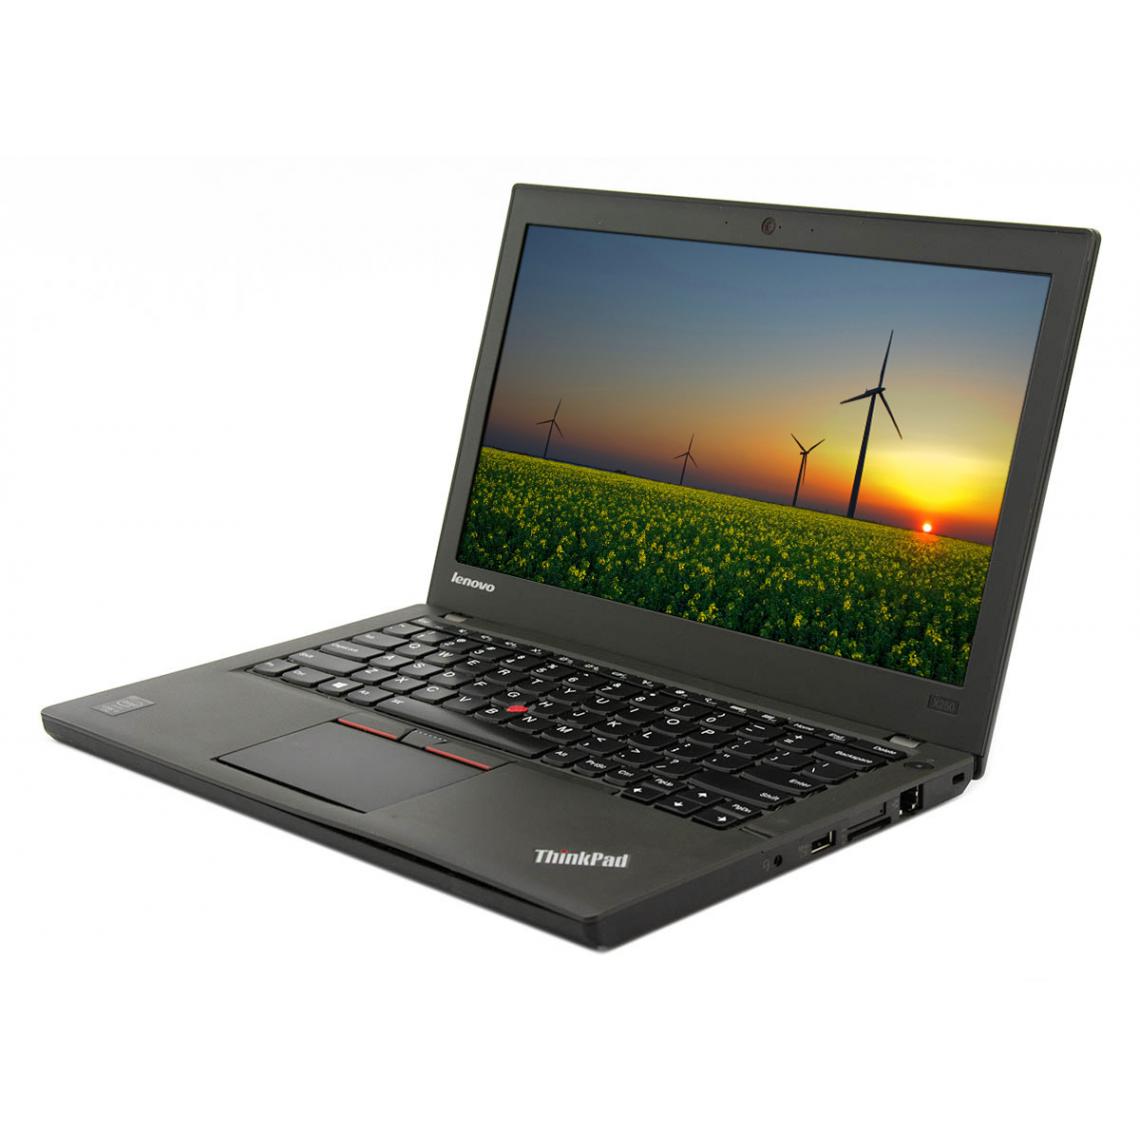 Lenovo - Portable Lenovo ThinkPad X250, Intel Core i5-5300U, 8GB RAM, 128GB SSD, 12.5"HD, WLAN, Bluetooth, WebCam, - PC Portable